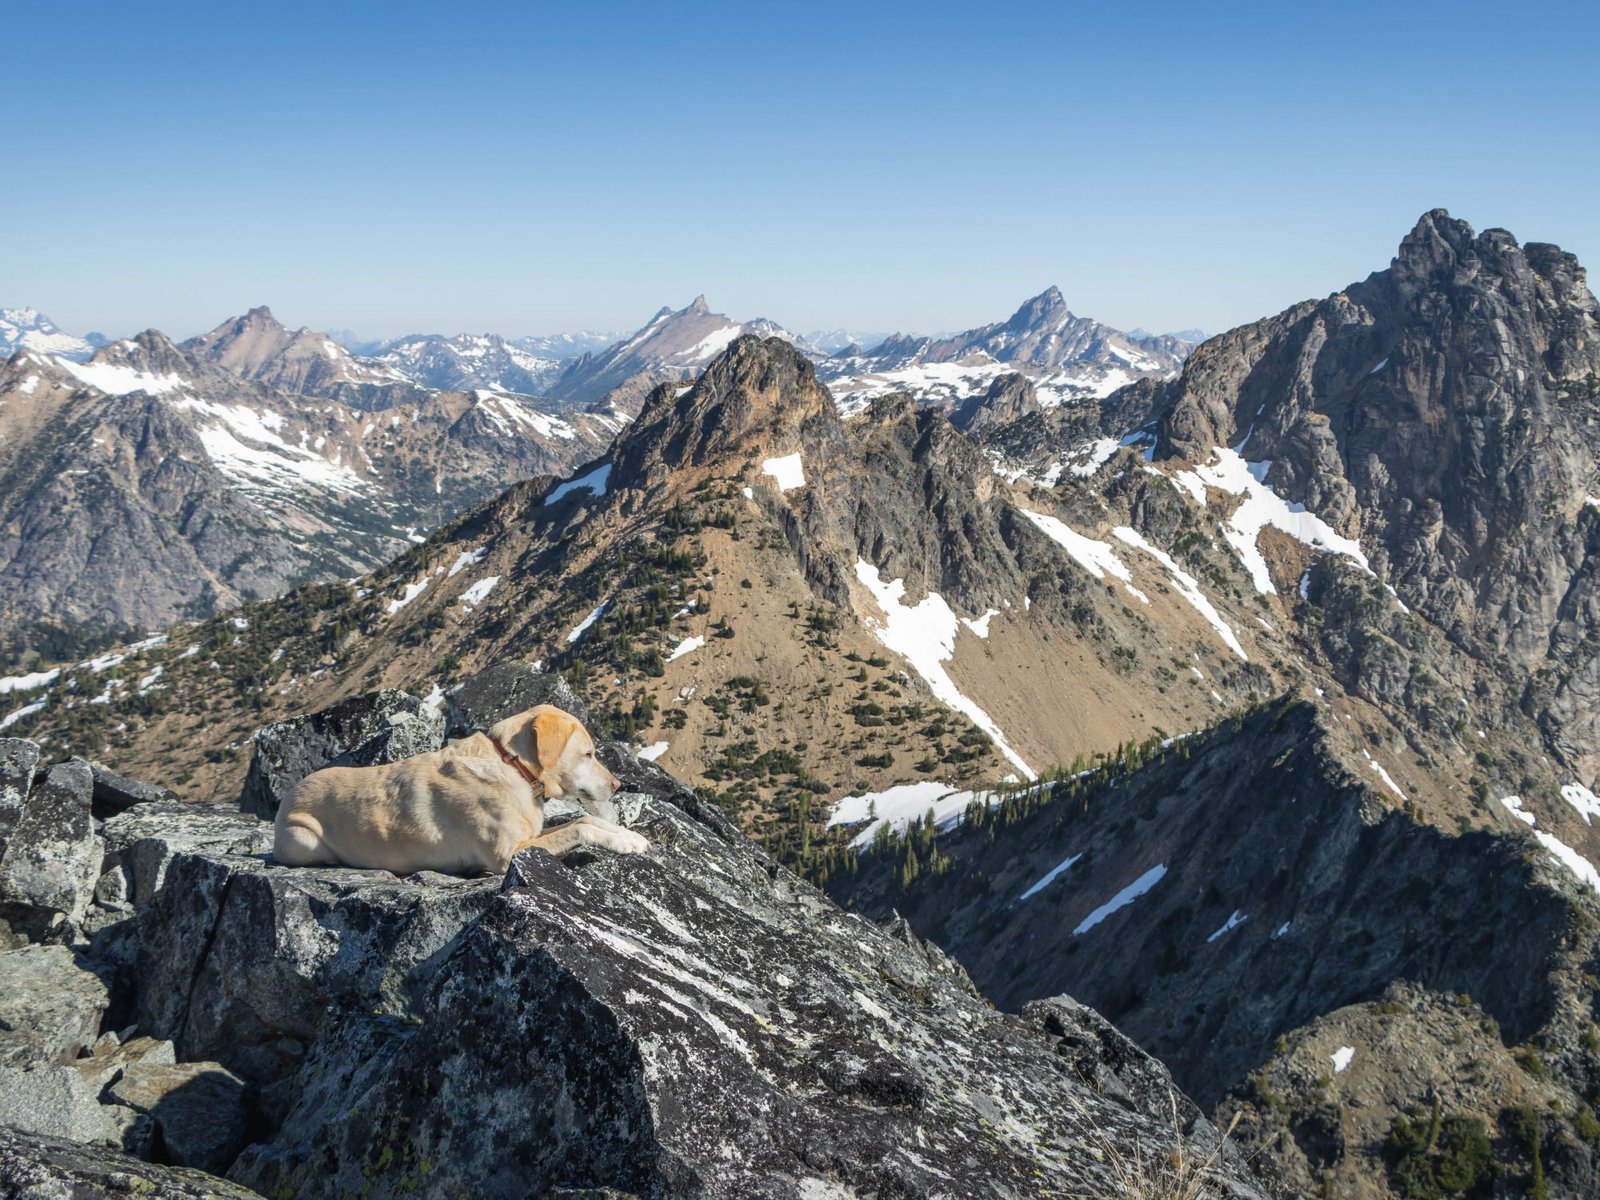 Summit dogs on Whistler Mountain